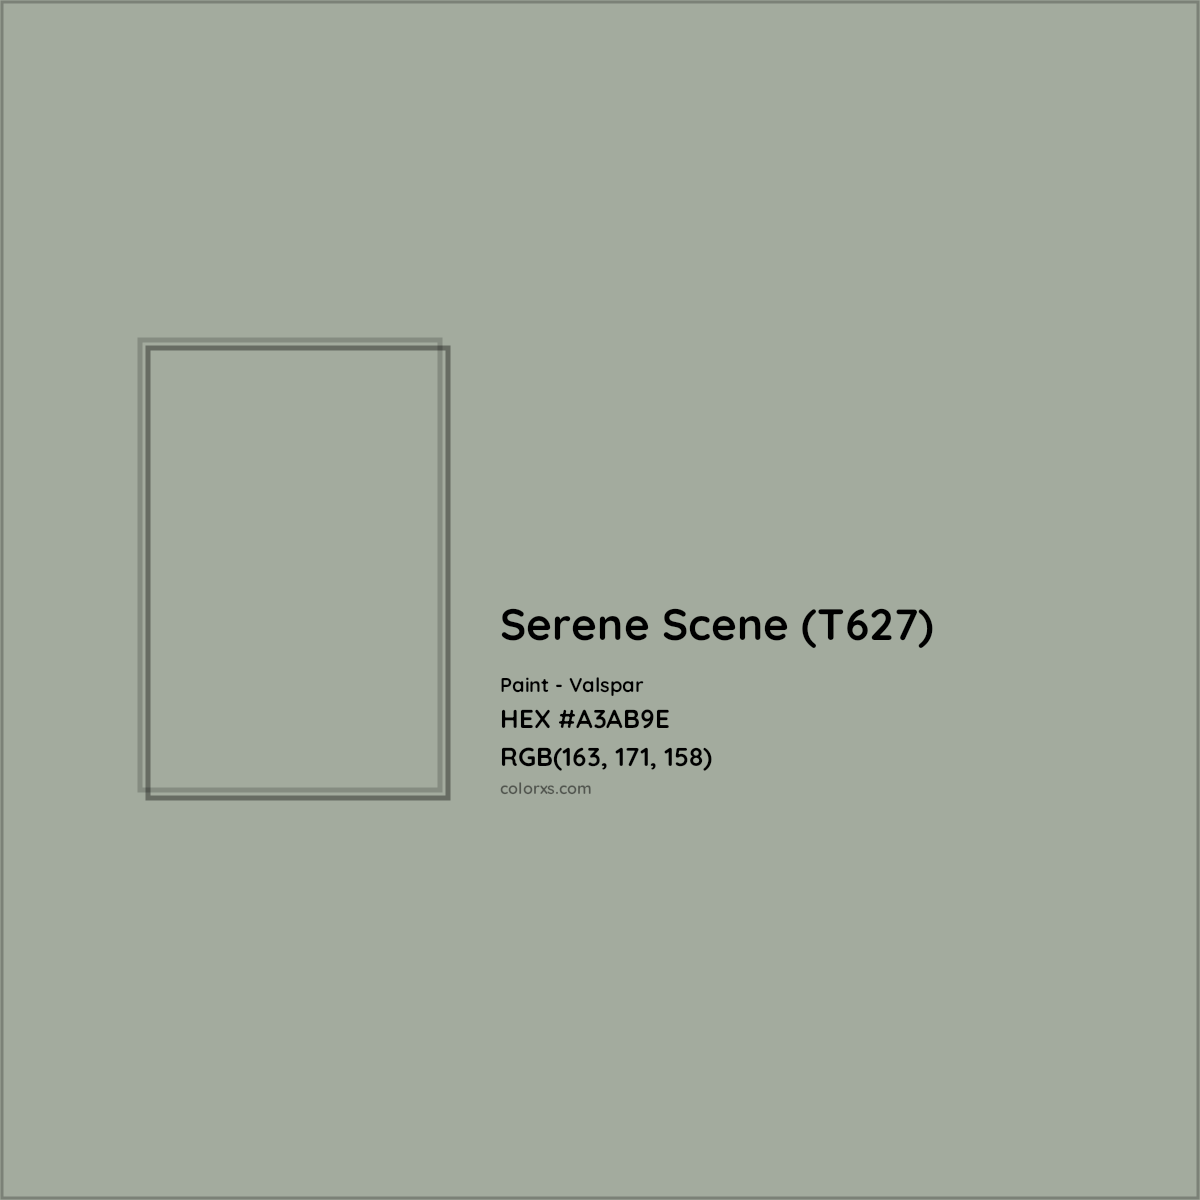 HEX #A3AB9E Serene Scene (T627) Paint Valspar - Color Code